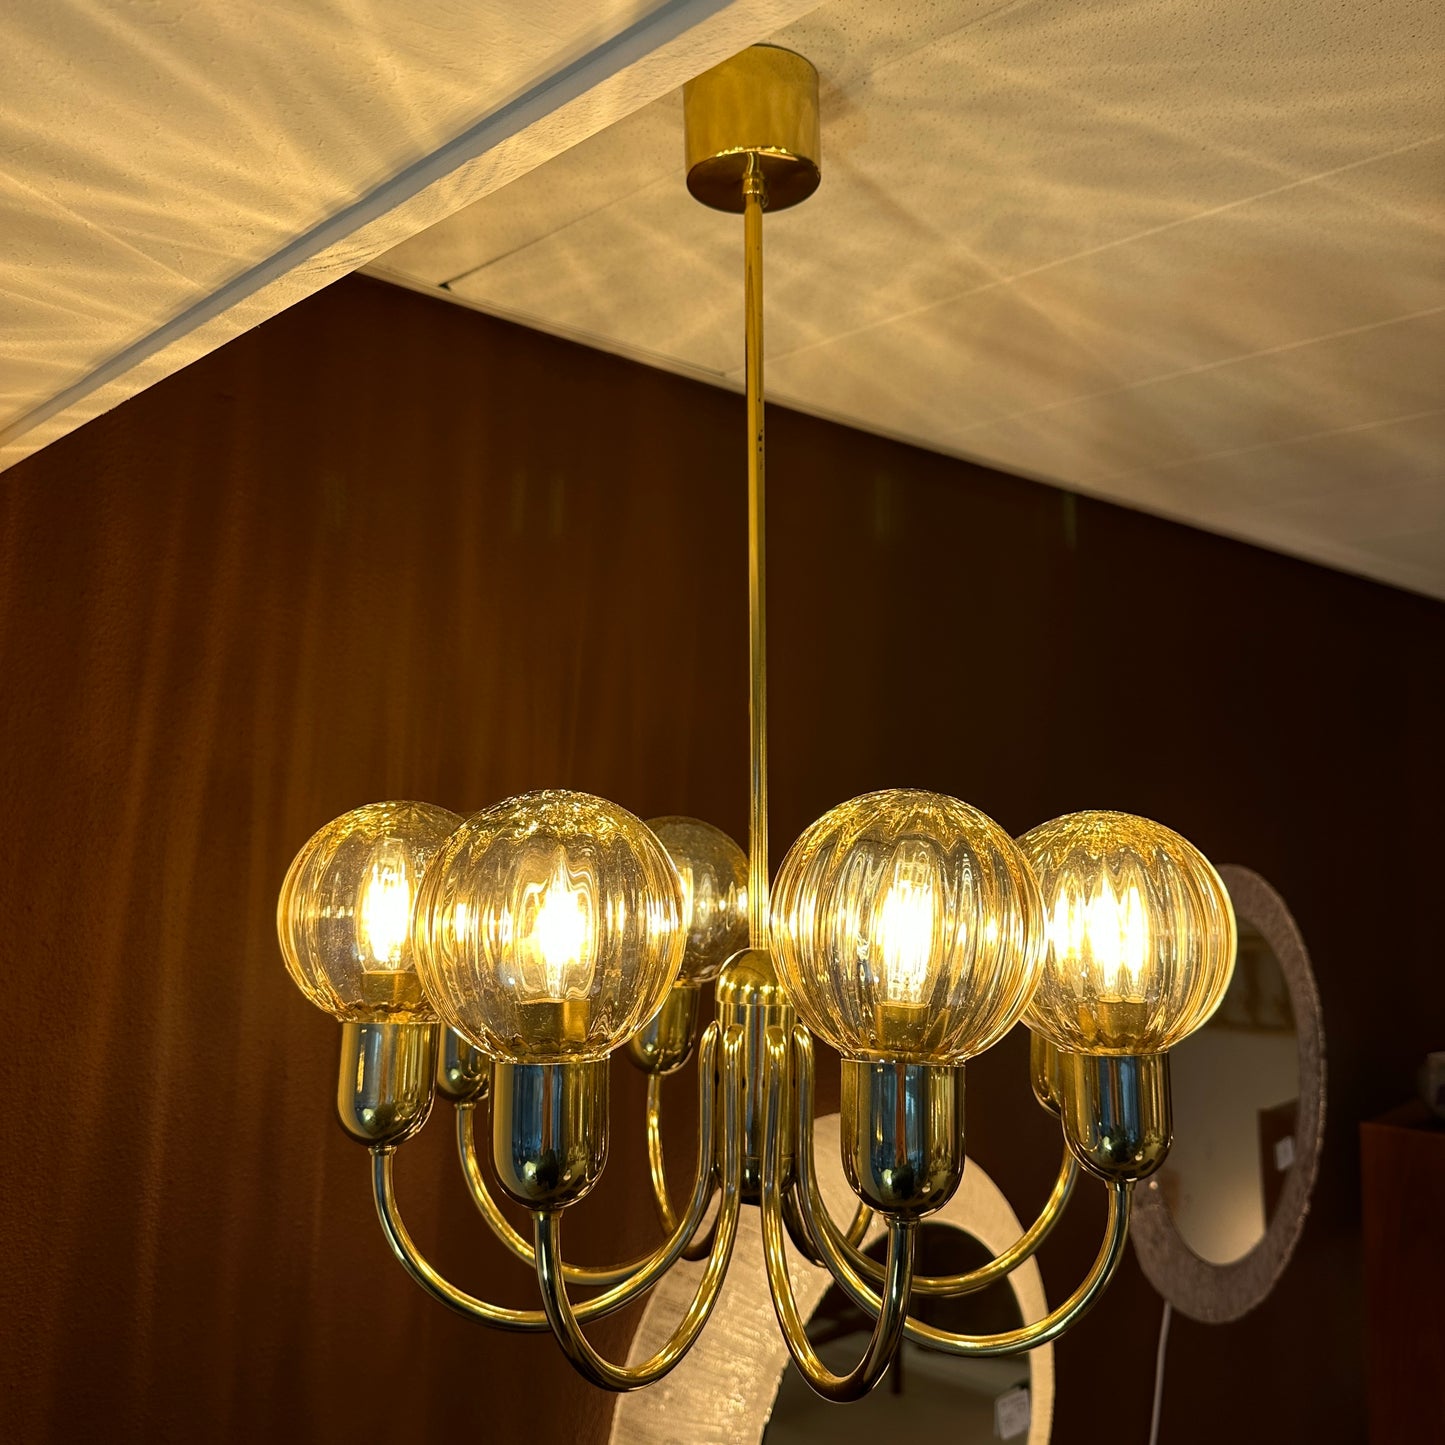 Kaiser Leuchten chandelier with amber globes